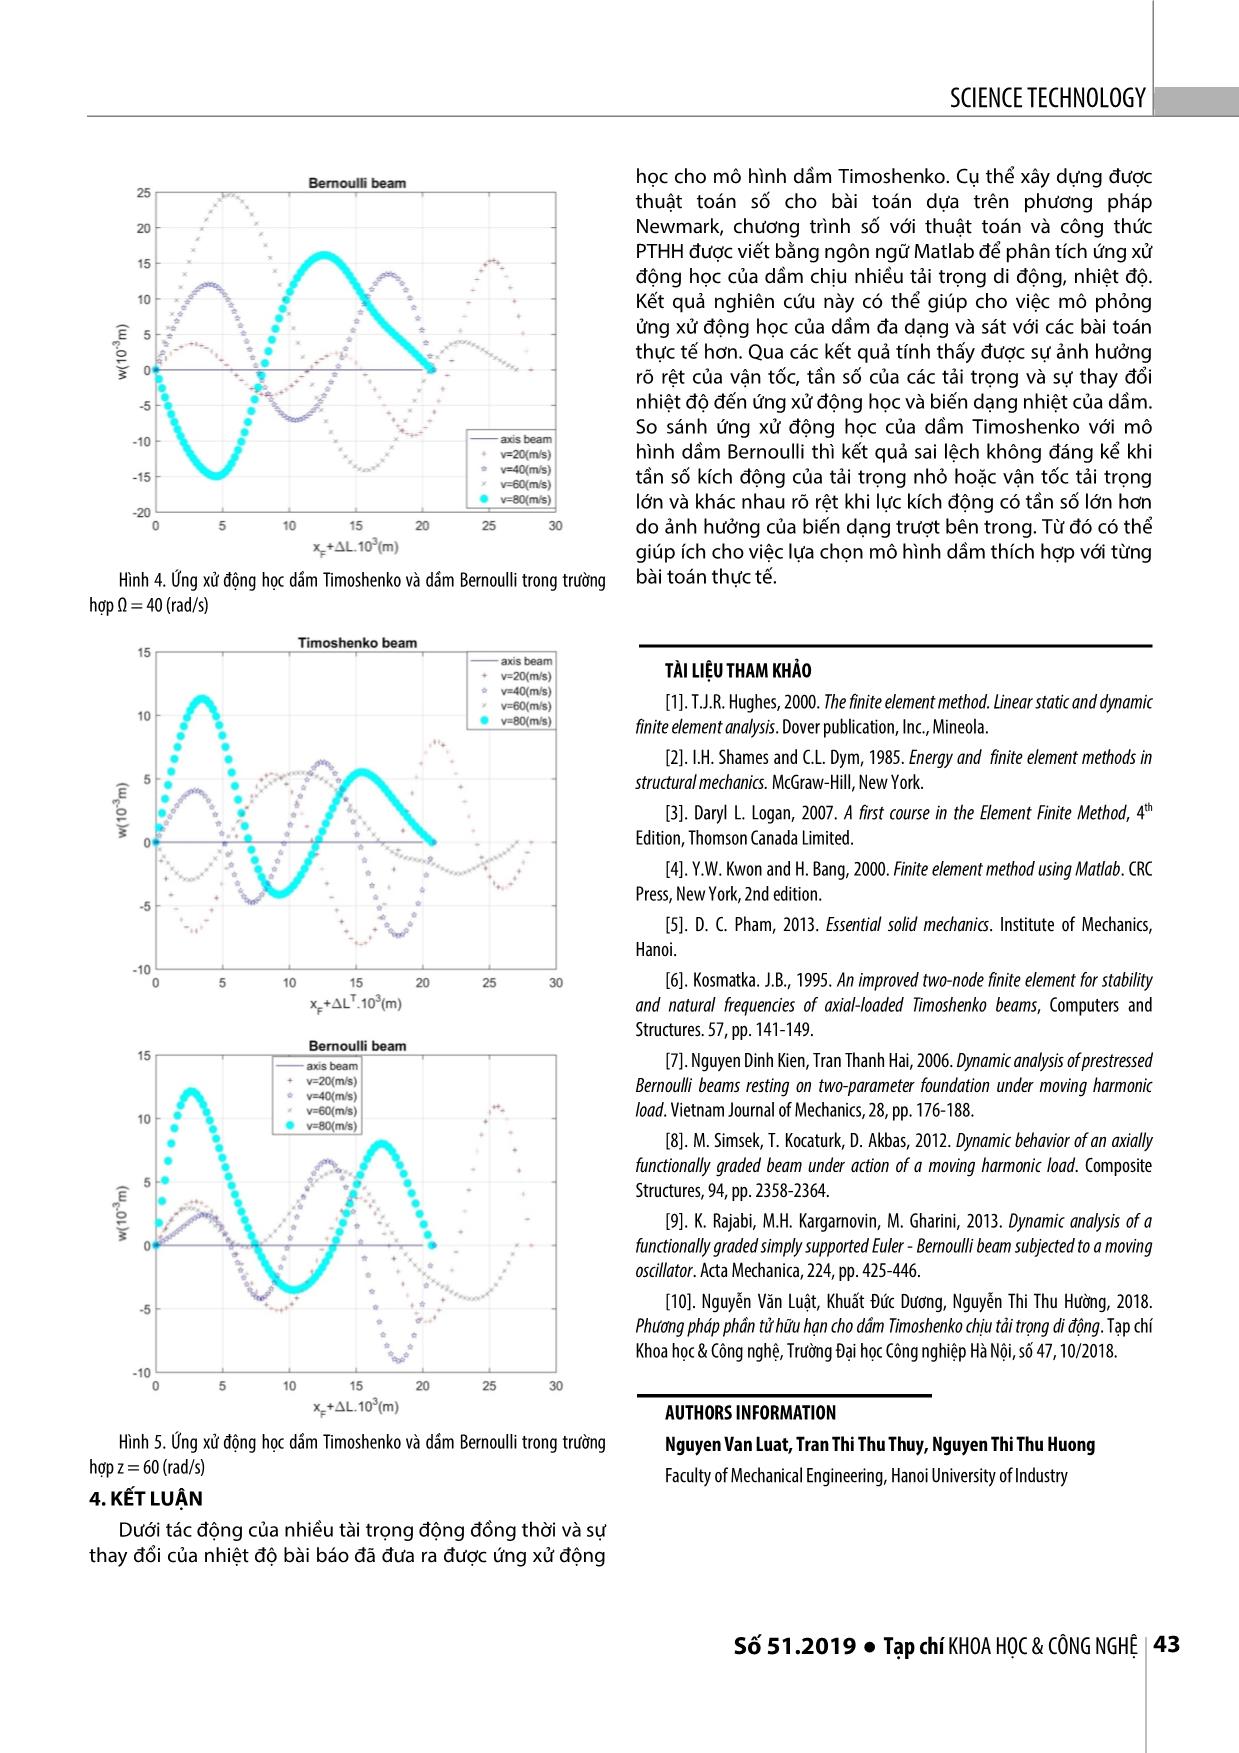 Phân tích động học của dầm Timoshenko chịu nhiều tải trọng di động và ảnh hưởng của nhiệt độ bằng phương pháp phần tử hữu hạn trang 5